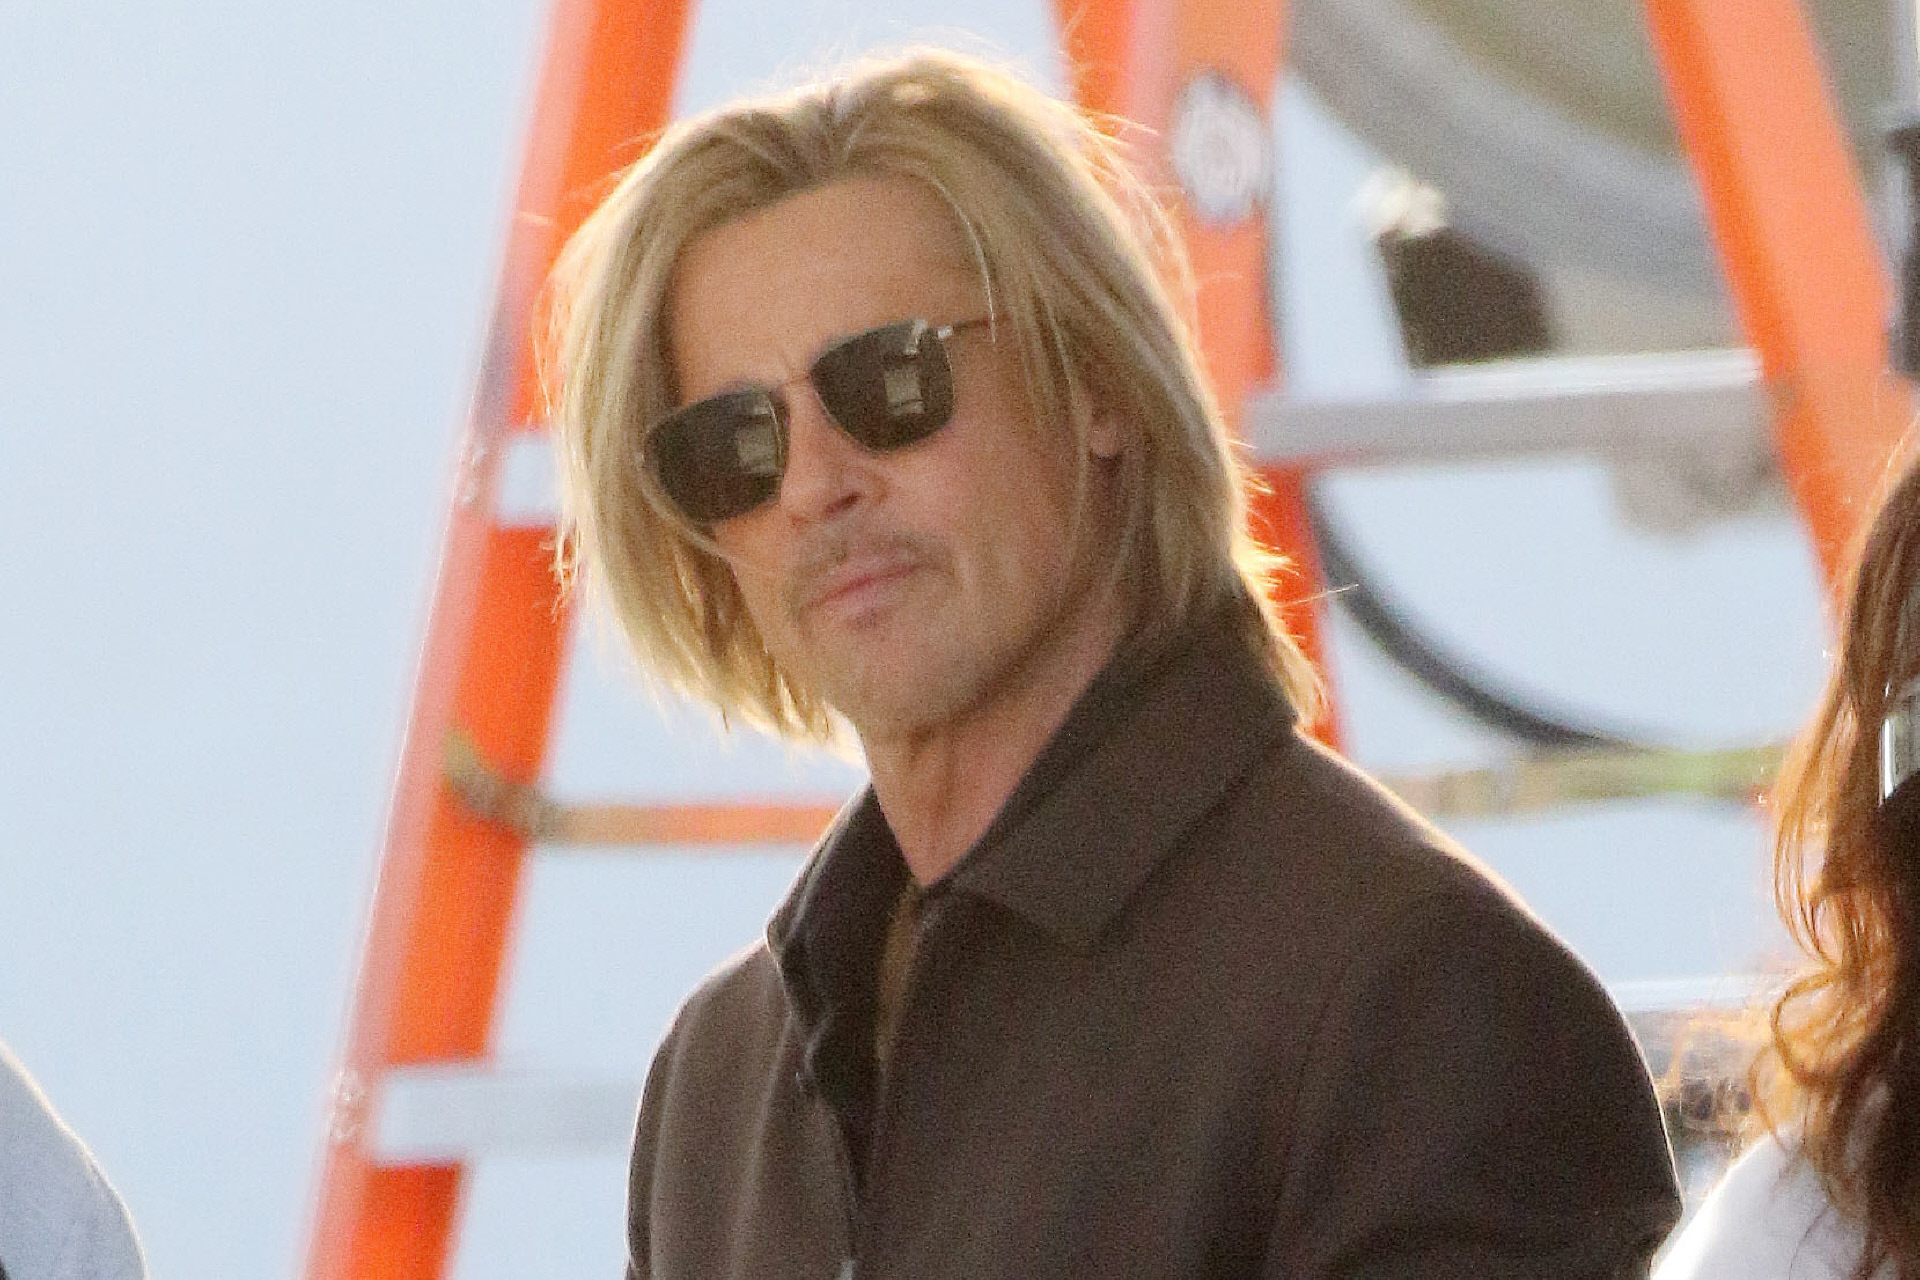 El actor Brad Pitt.